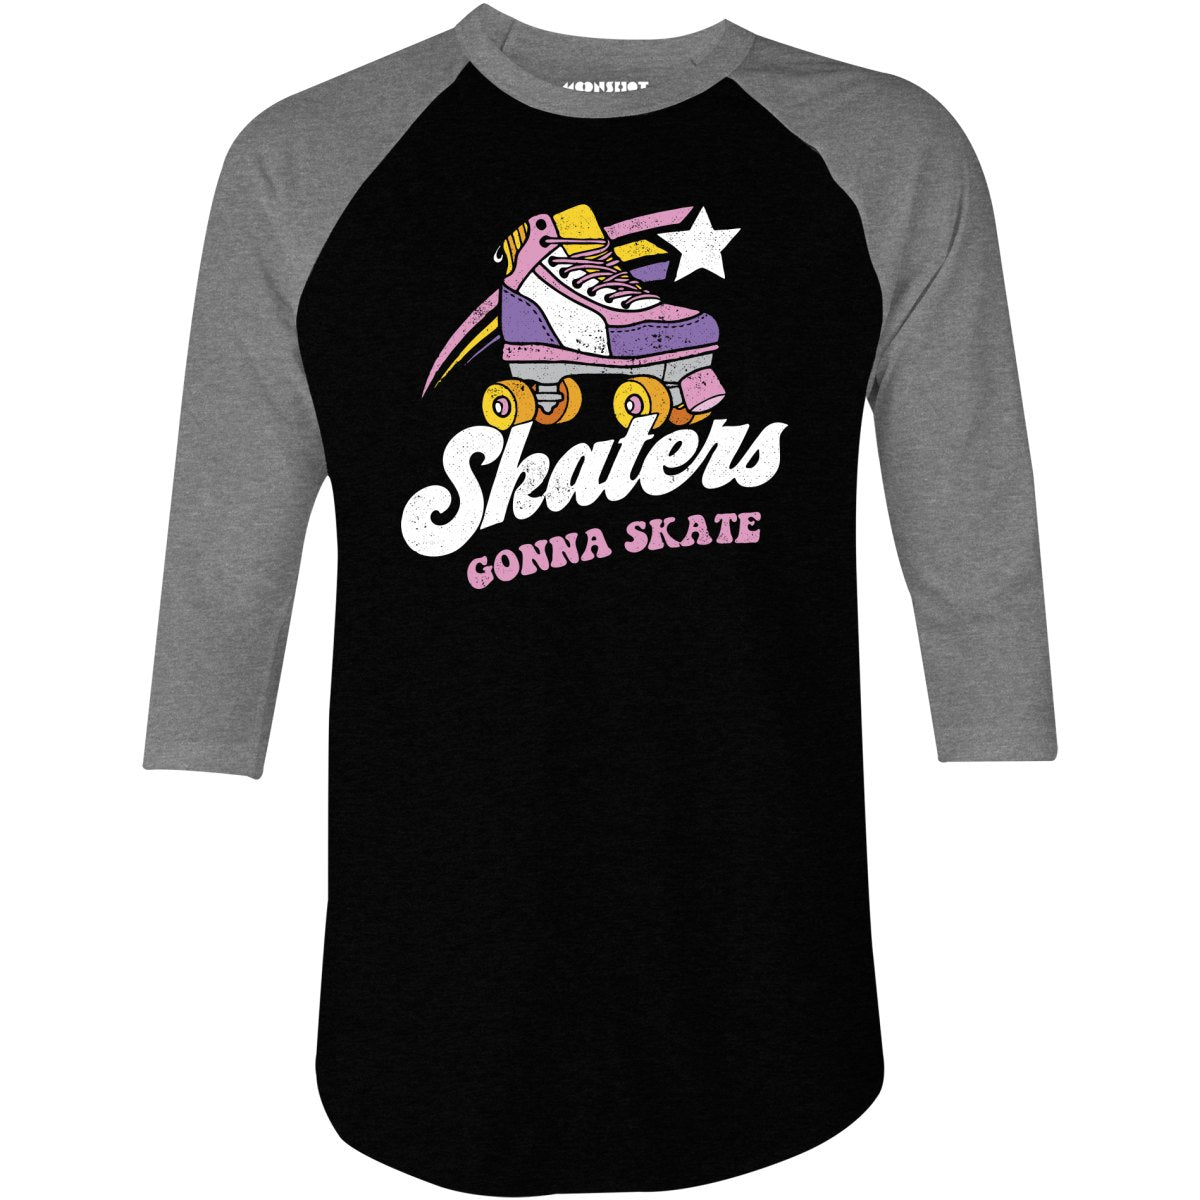 Skaters Gonna Skate - 3/4 Sleeve Raglan T-Shirt